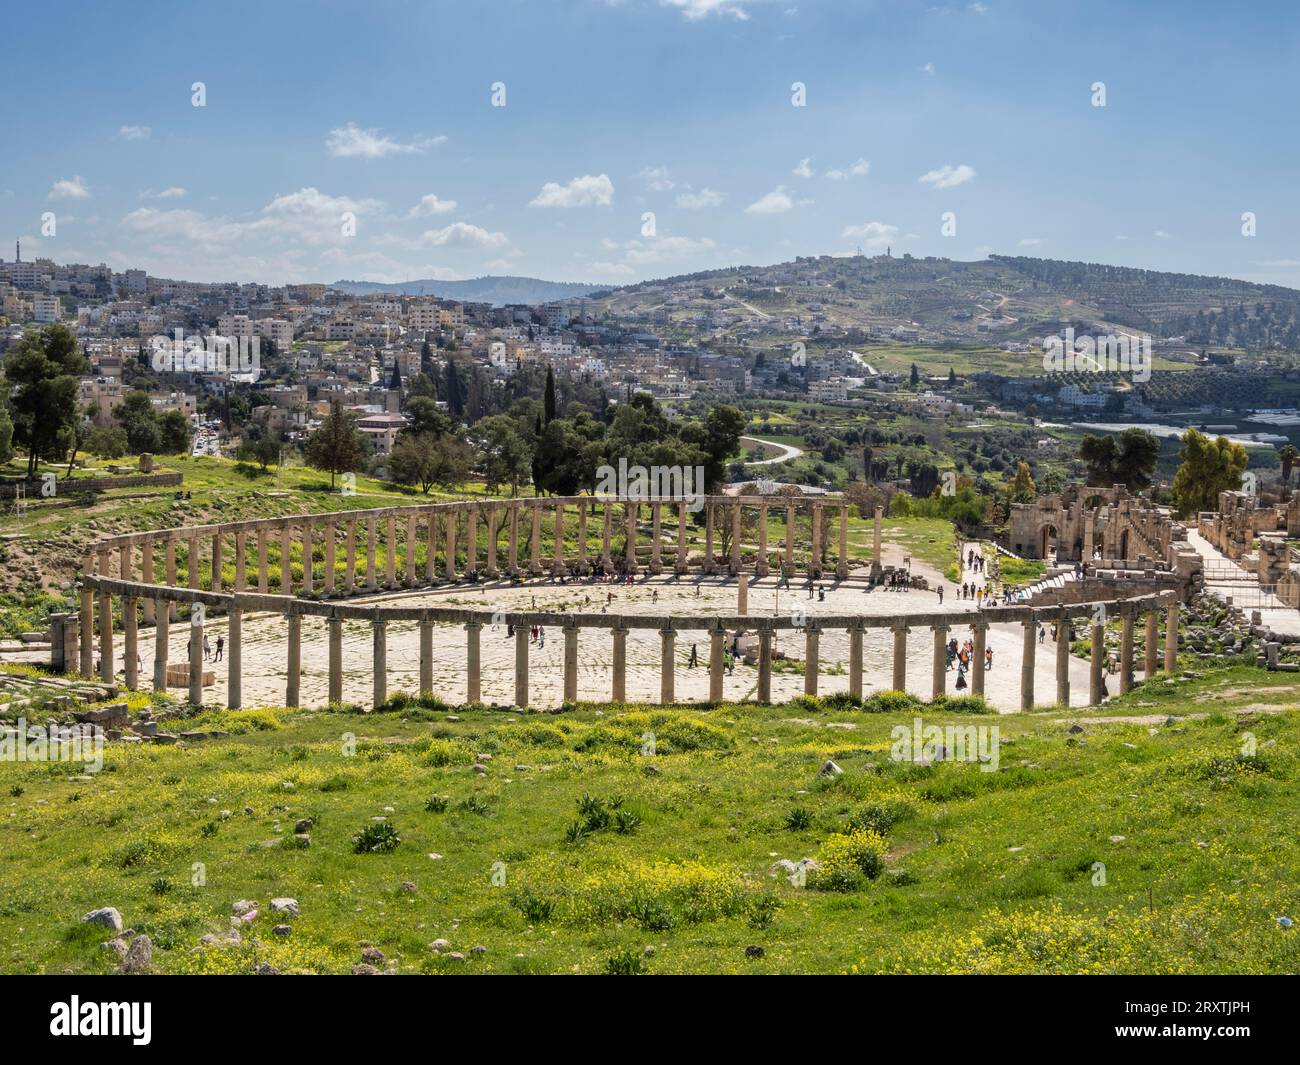 Colonne nella piazza ovale nell'antica città di Jerash, che si ritiene sia stata fondata nel 331 a.C. da Alessandro Magno, Jerash, Giordania, Medio Oriente Foto Stock